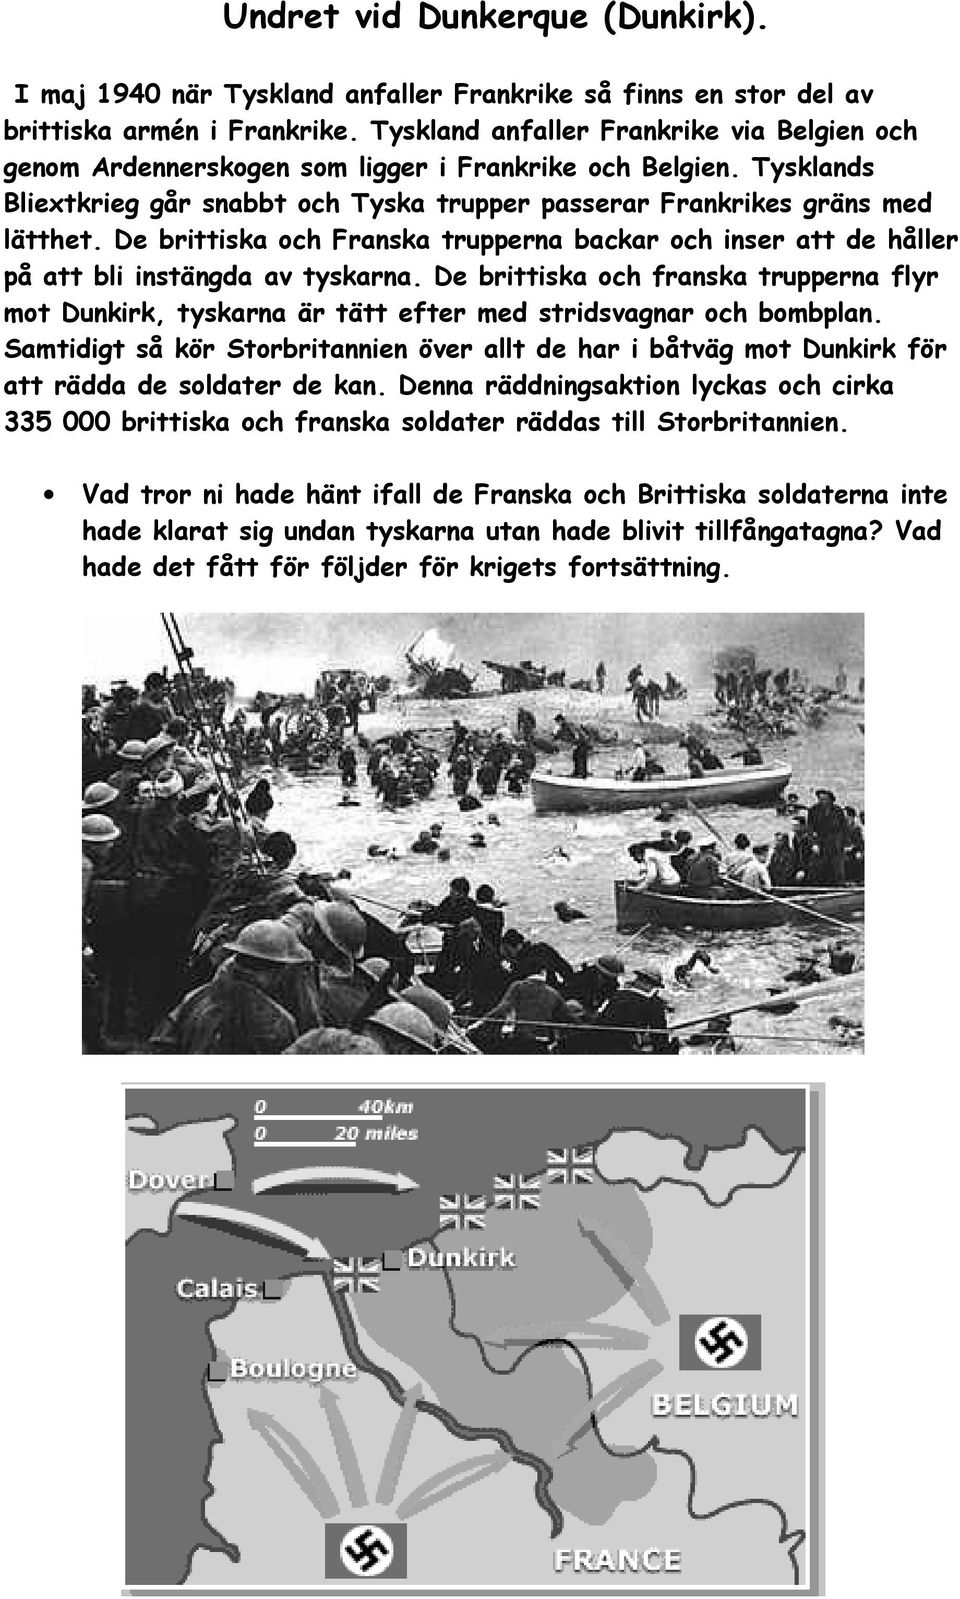 De brittiska och Franska trupperna backar och inser att de håller på att bli instängda av tyskarna.